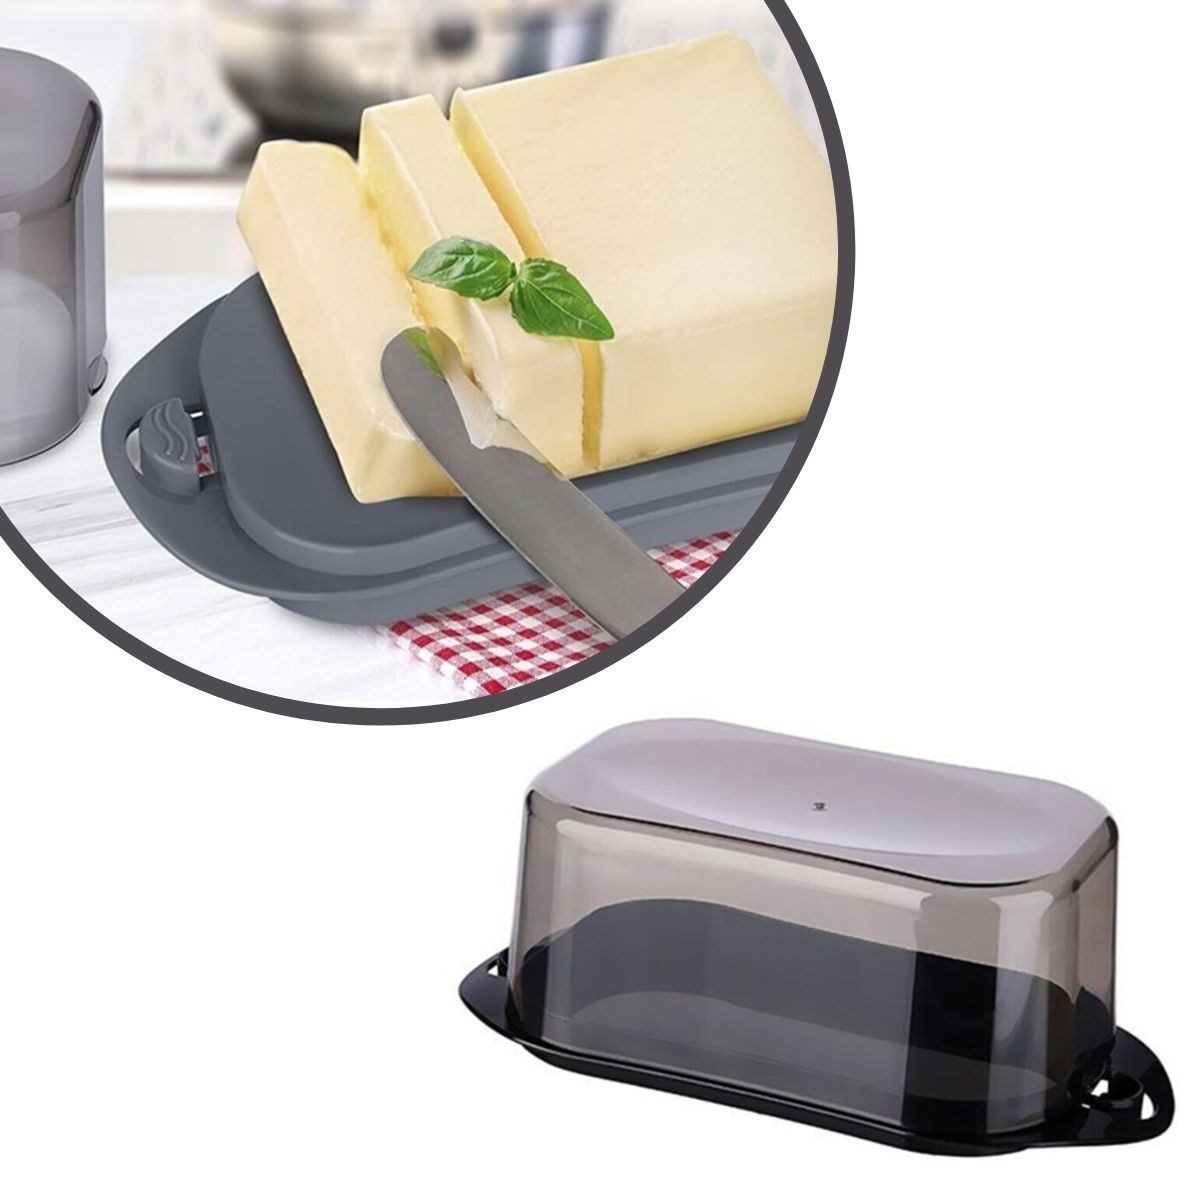 Kilitli Plastik Kapaklı Kahvaltılık Tereyağlık Peynirlik Erzak Saklama Kabı Ap-9428 (4172)